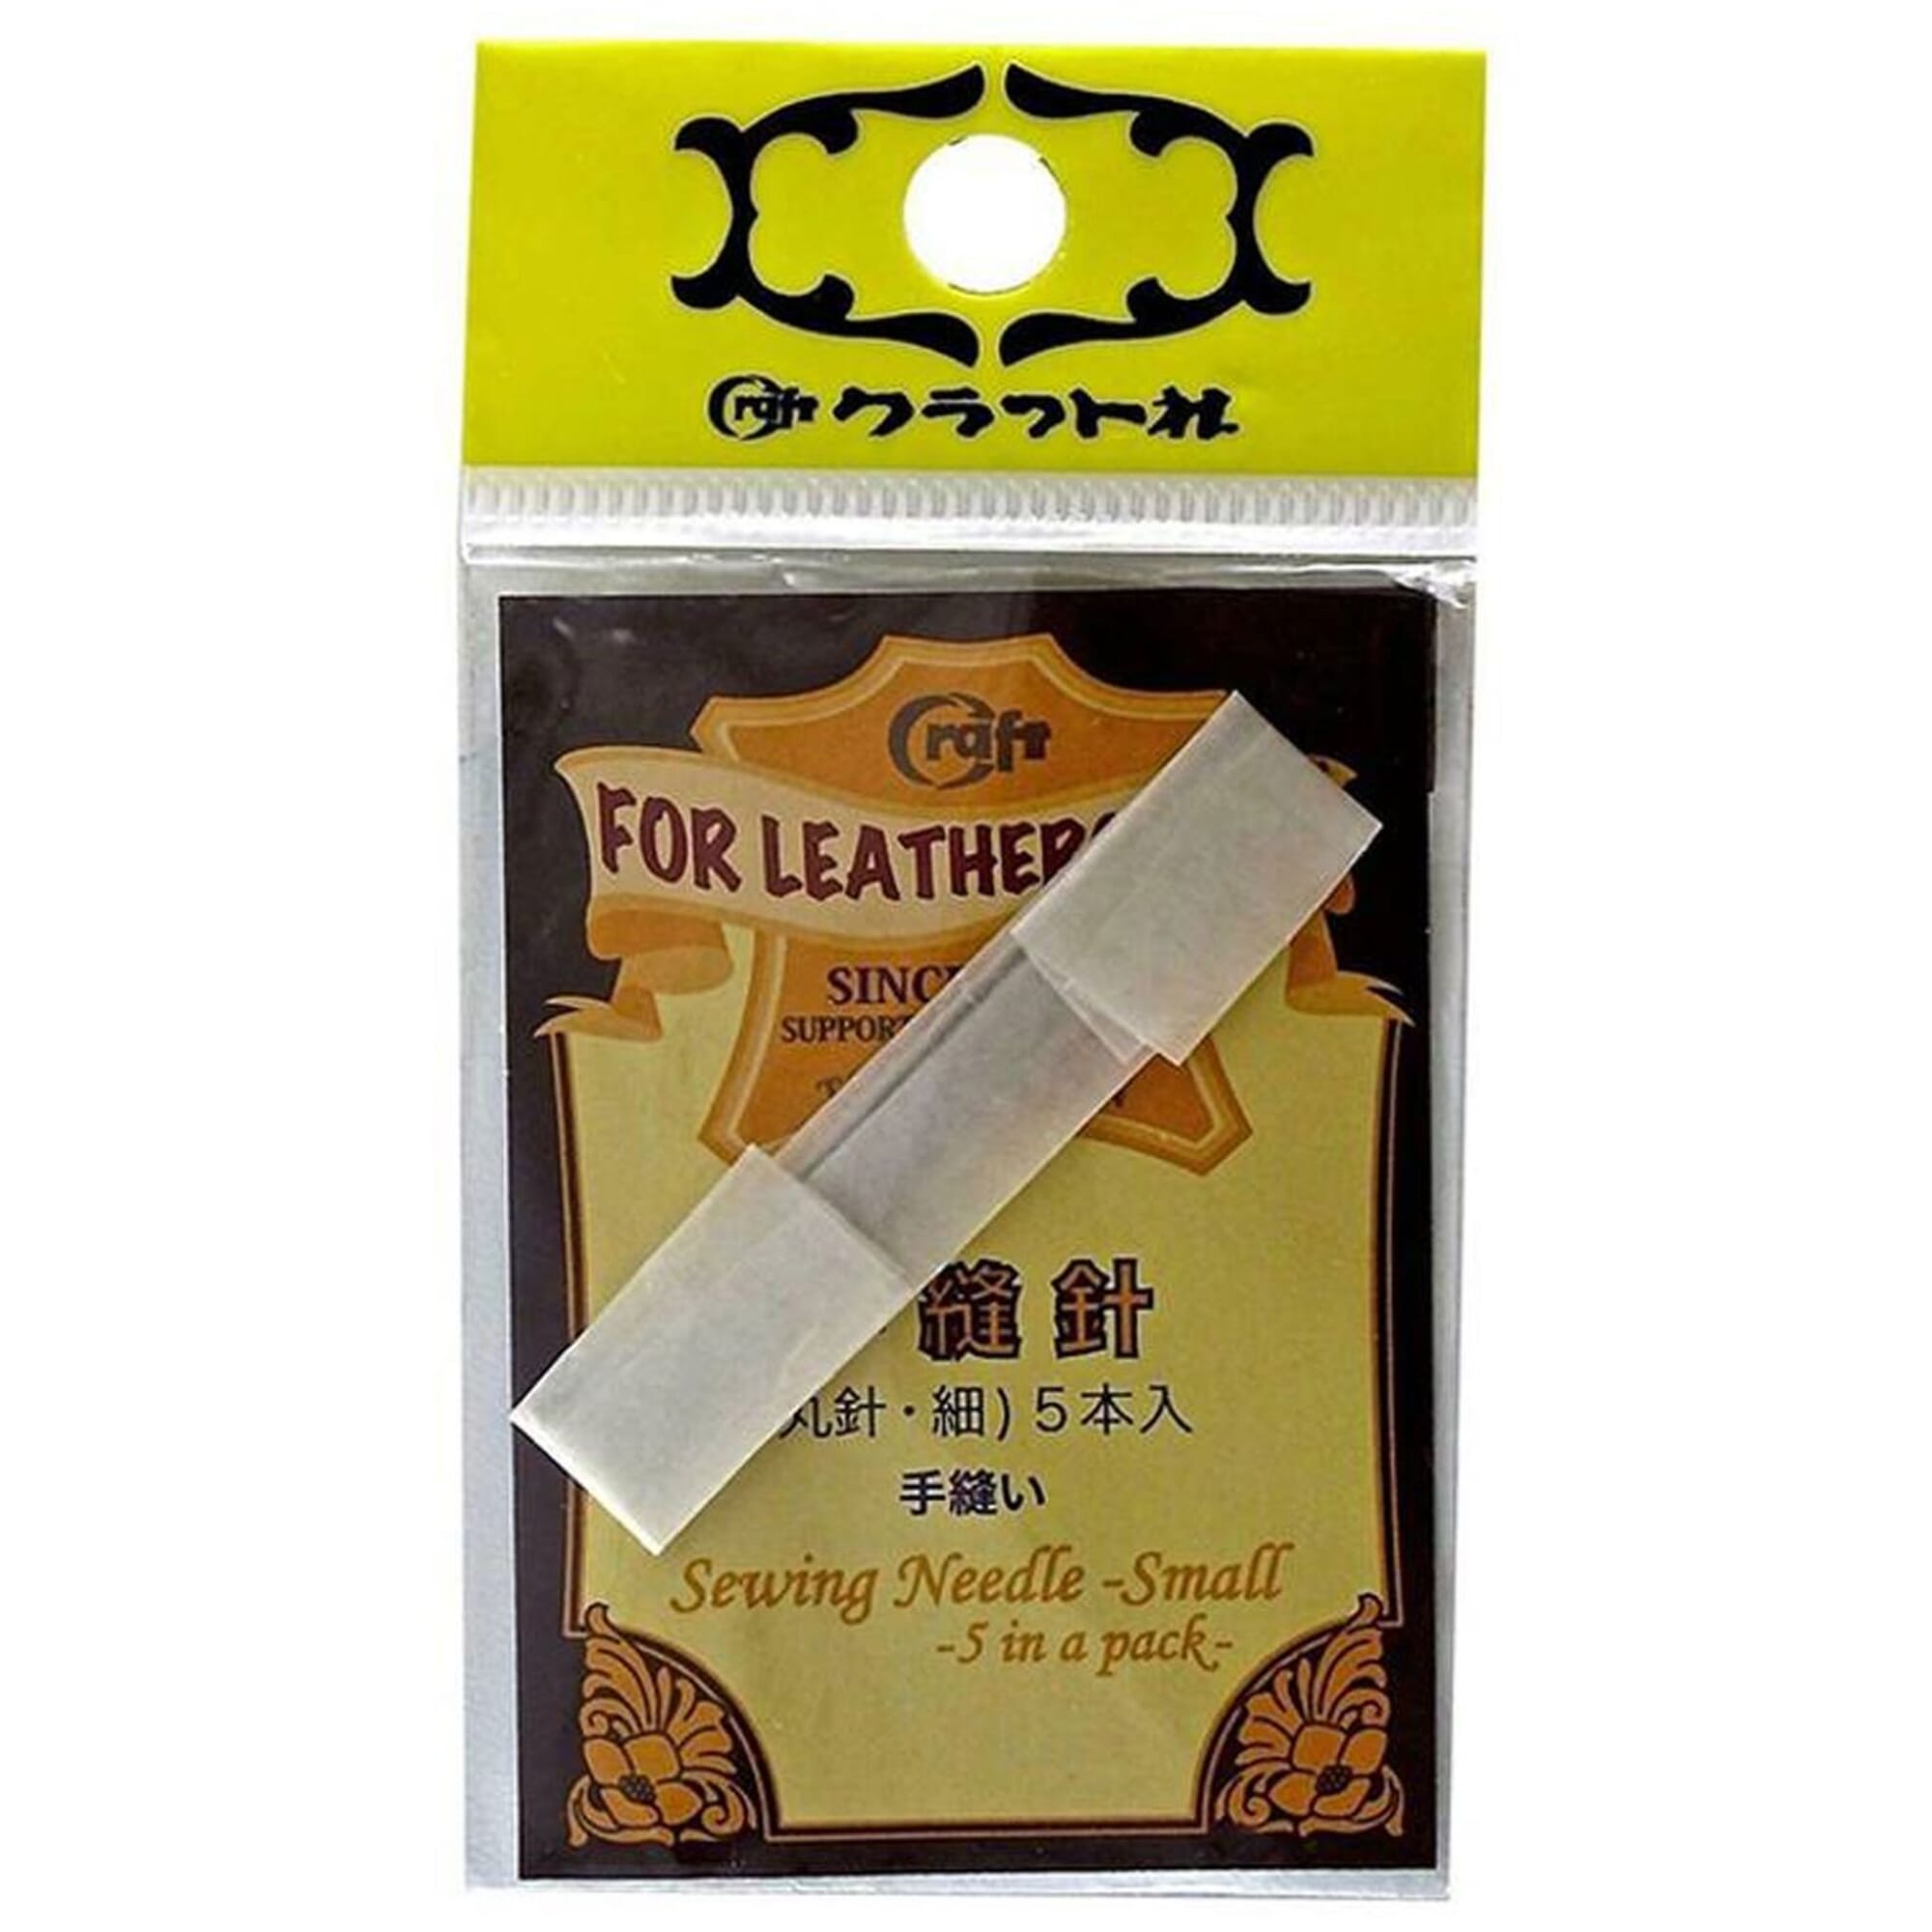 クラフトシャ(craftsha) Kraft Hand-Sewing Needle ( Round Pin ) Fine 8602